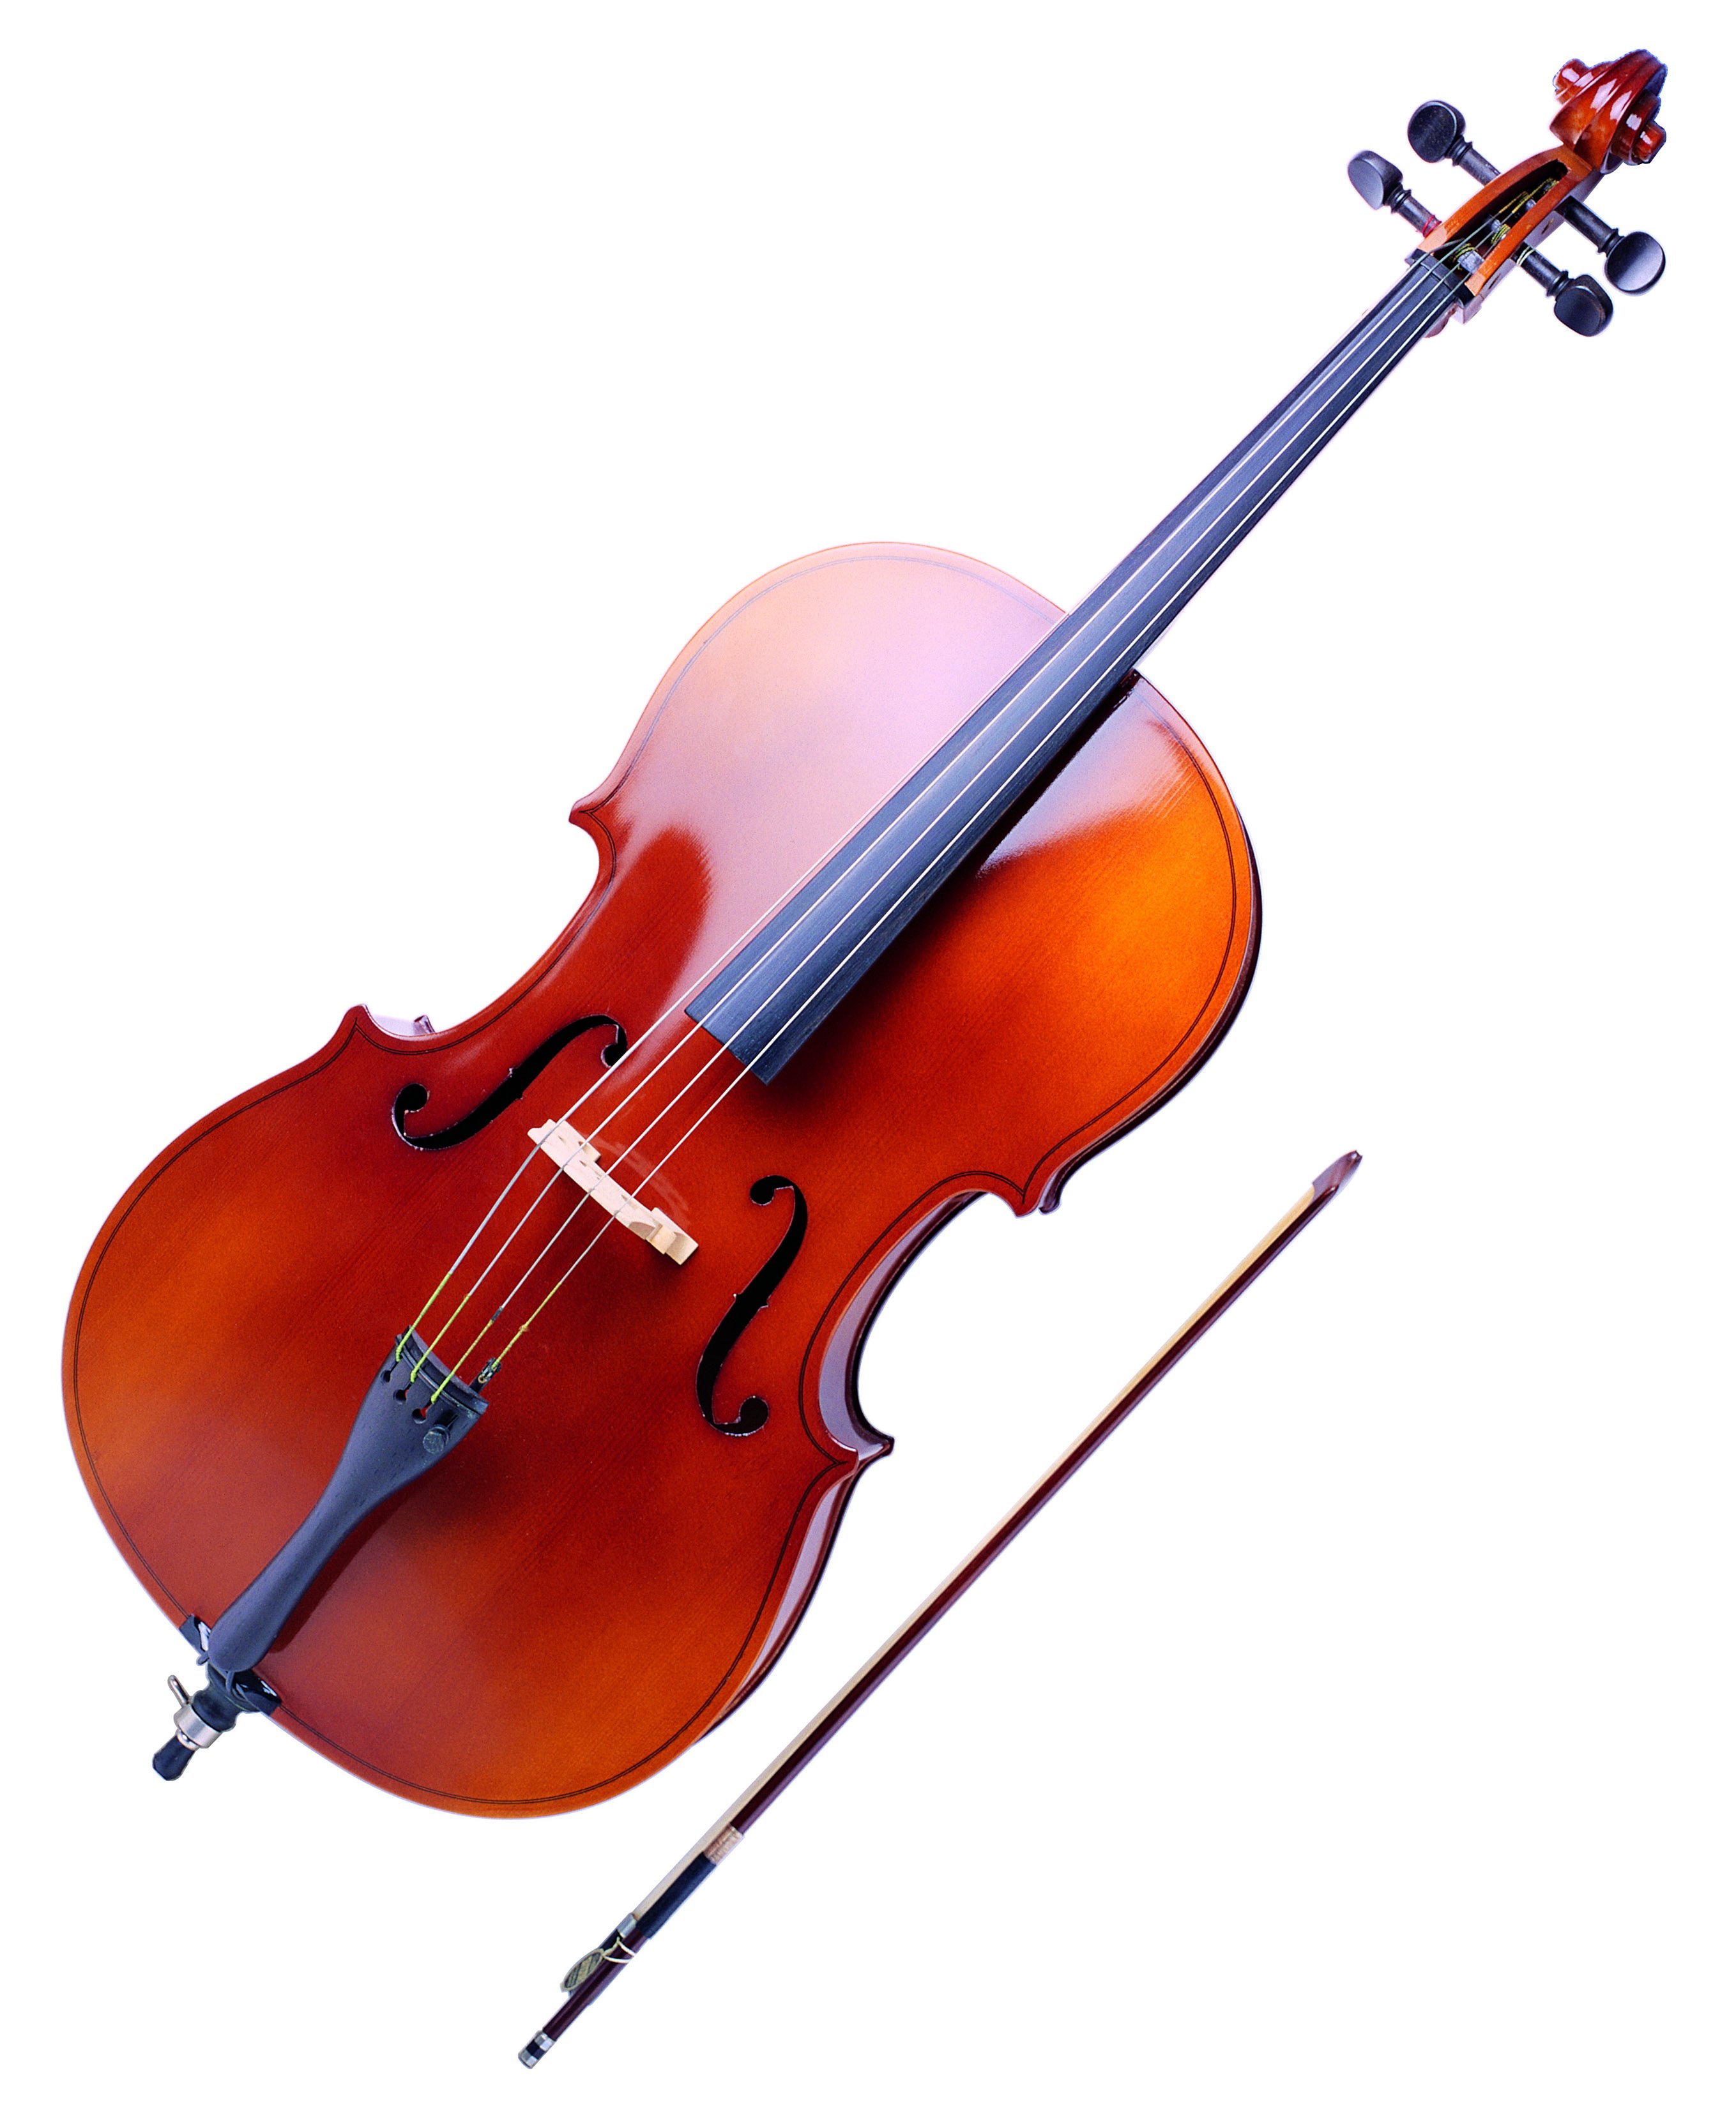 Нота звук скрипки. Контрабас струнные смычковые музыкальные инструменты. Виолончель струнные смычковые музыкальные инструменты. Струнные смычковые инструменты Альт. Альт инструмент музыкальный струнный.